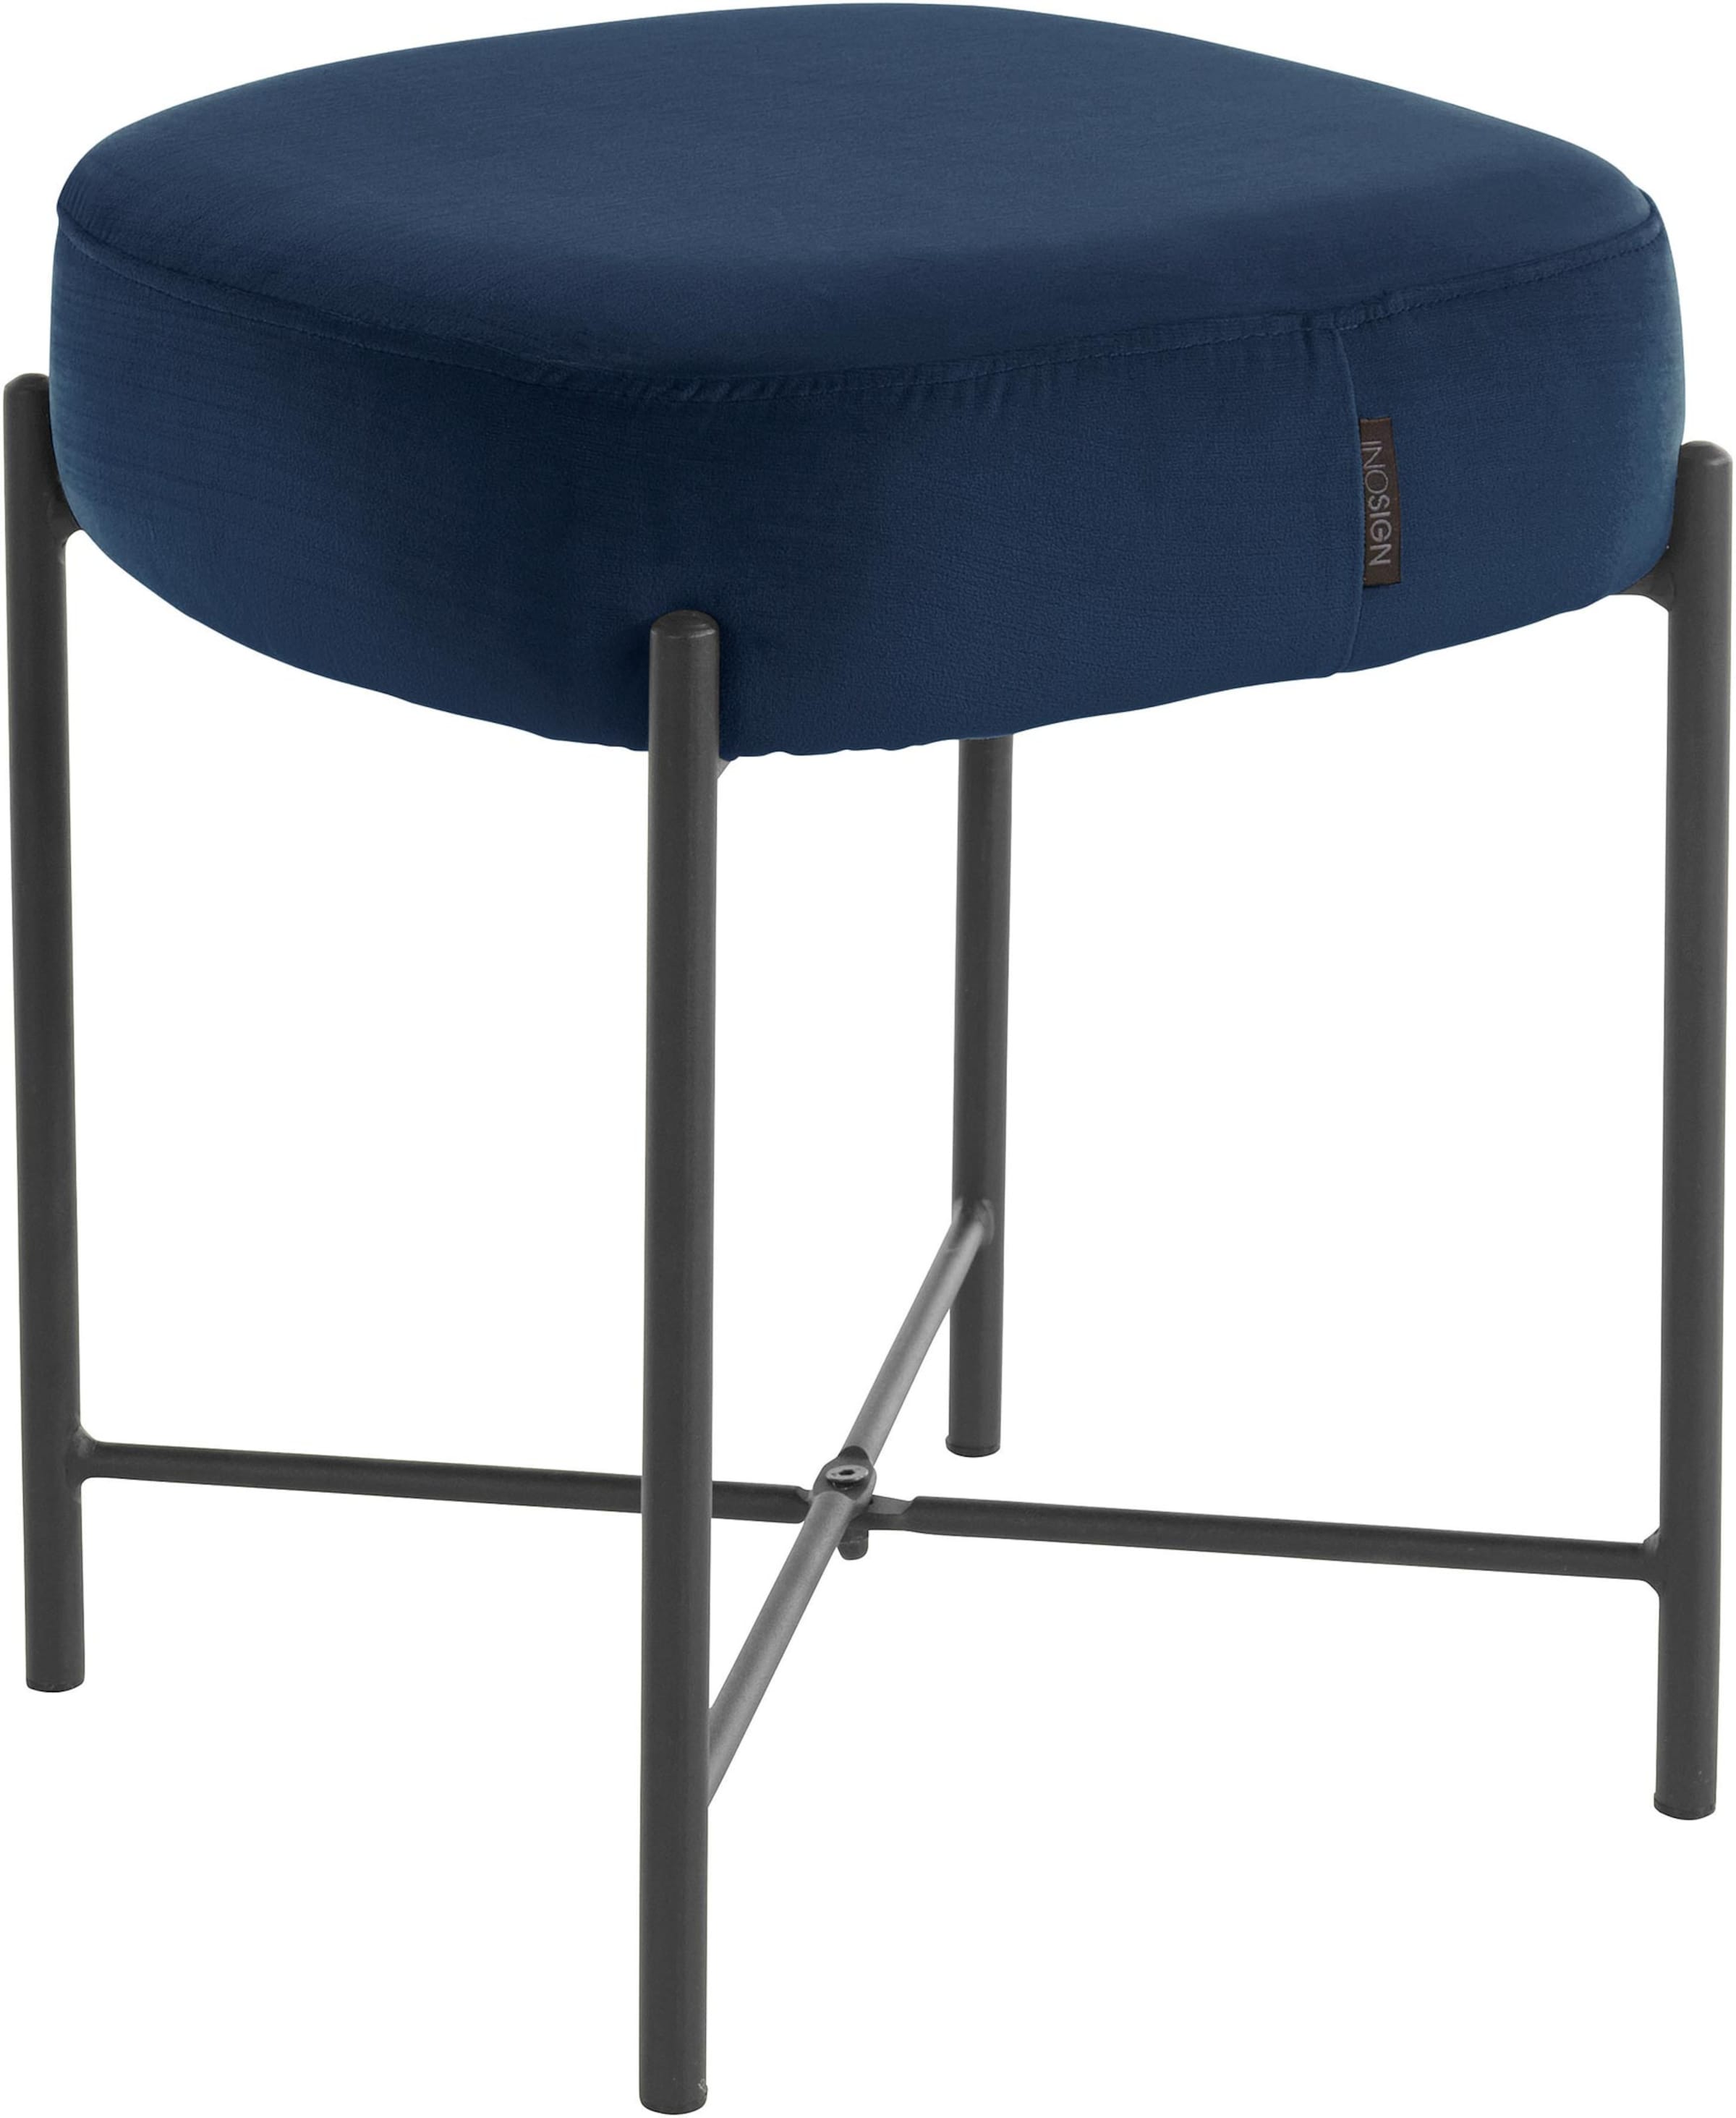 Möbel Bänke & Hocker INOSIGN Sitzhocker in blau/schwarz 